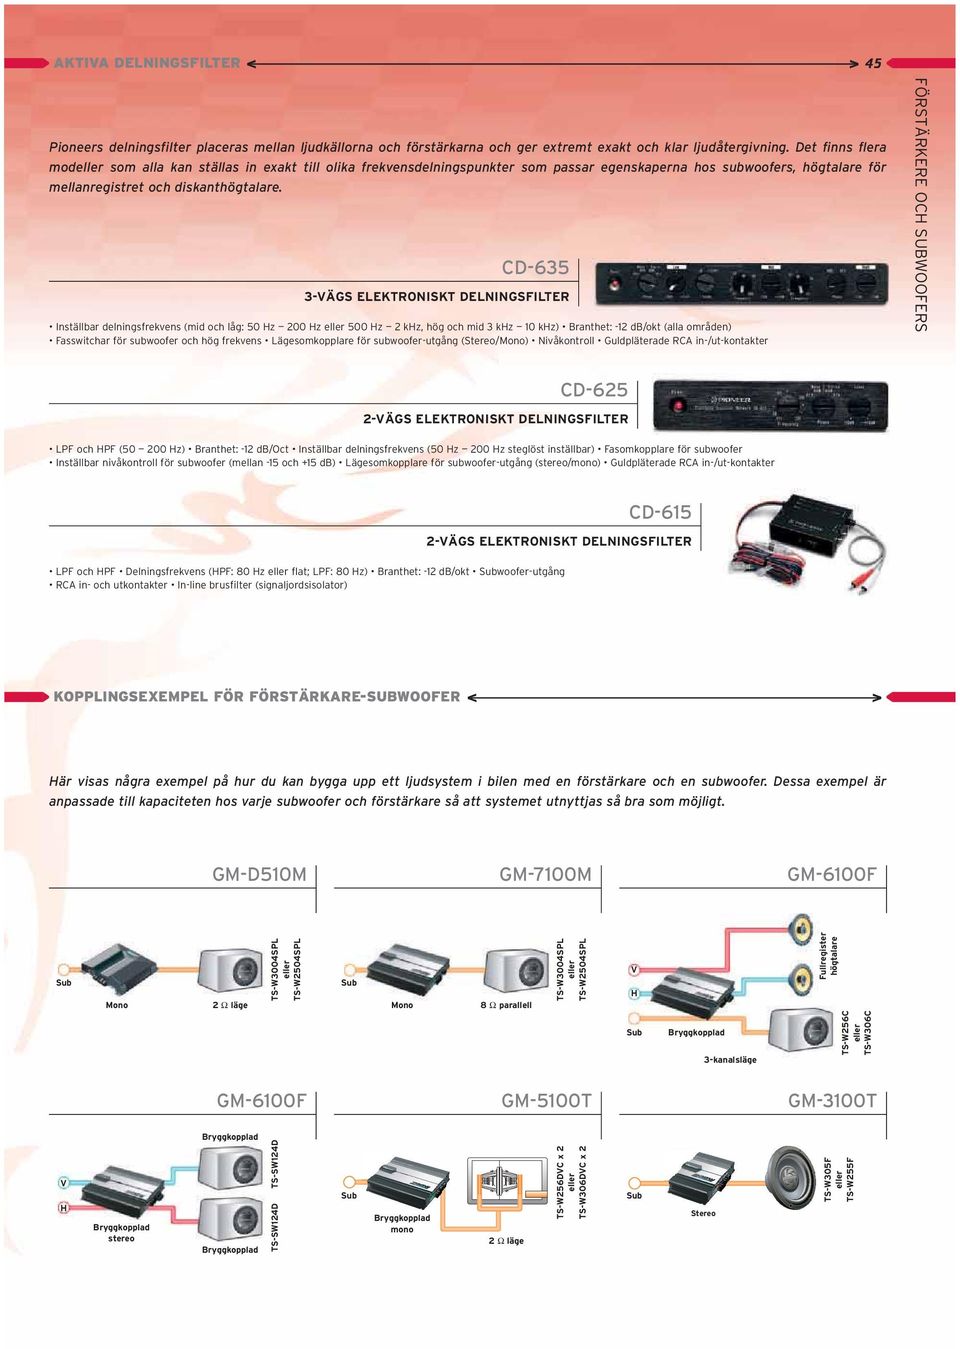 D-635 3-VÄS LKTRONISKT DLNINSILTR Inställbar delnngsfrekvens (md och låg: 50 Hz 200 Hz eller 500 Hz 2 khz, hög och md 3 khz 10 khz) ranthet: -12 d/okt (alla områden) asswtchar för subwoofer och hög